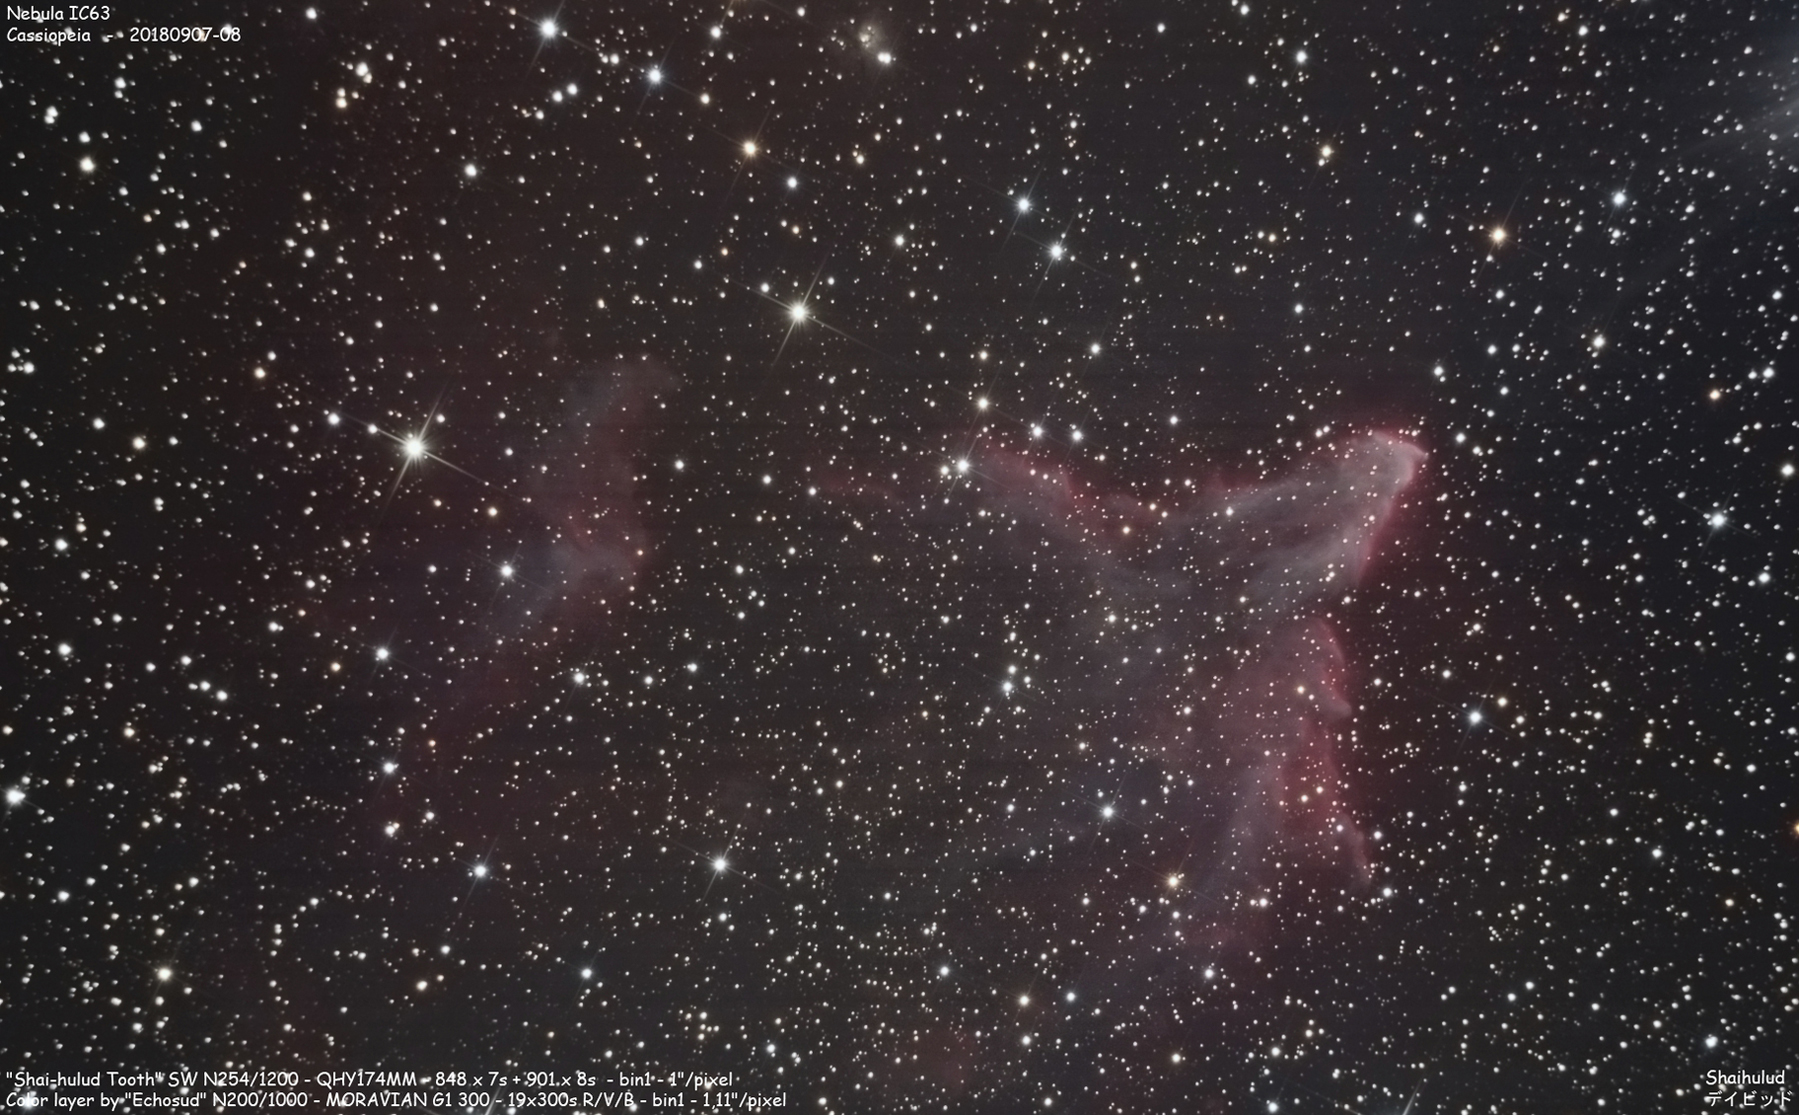 Nebula IC63